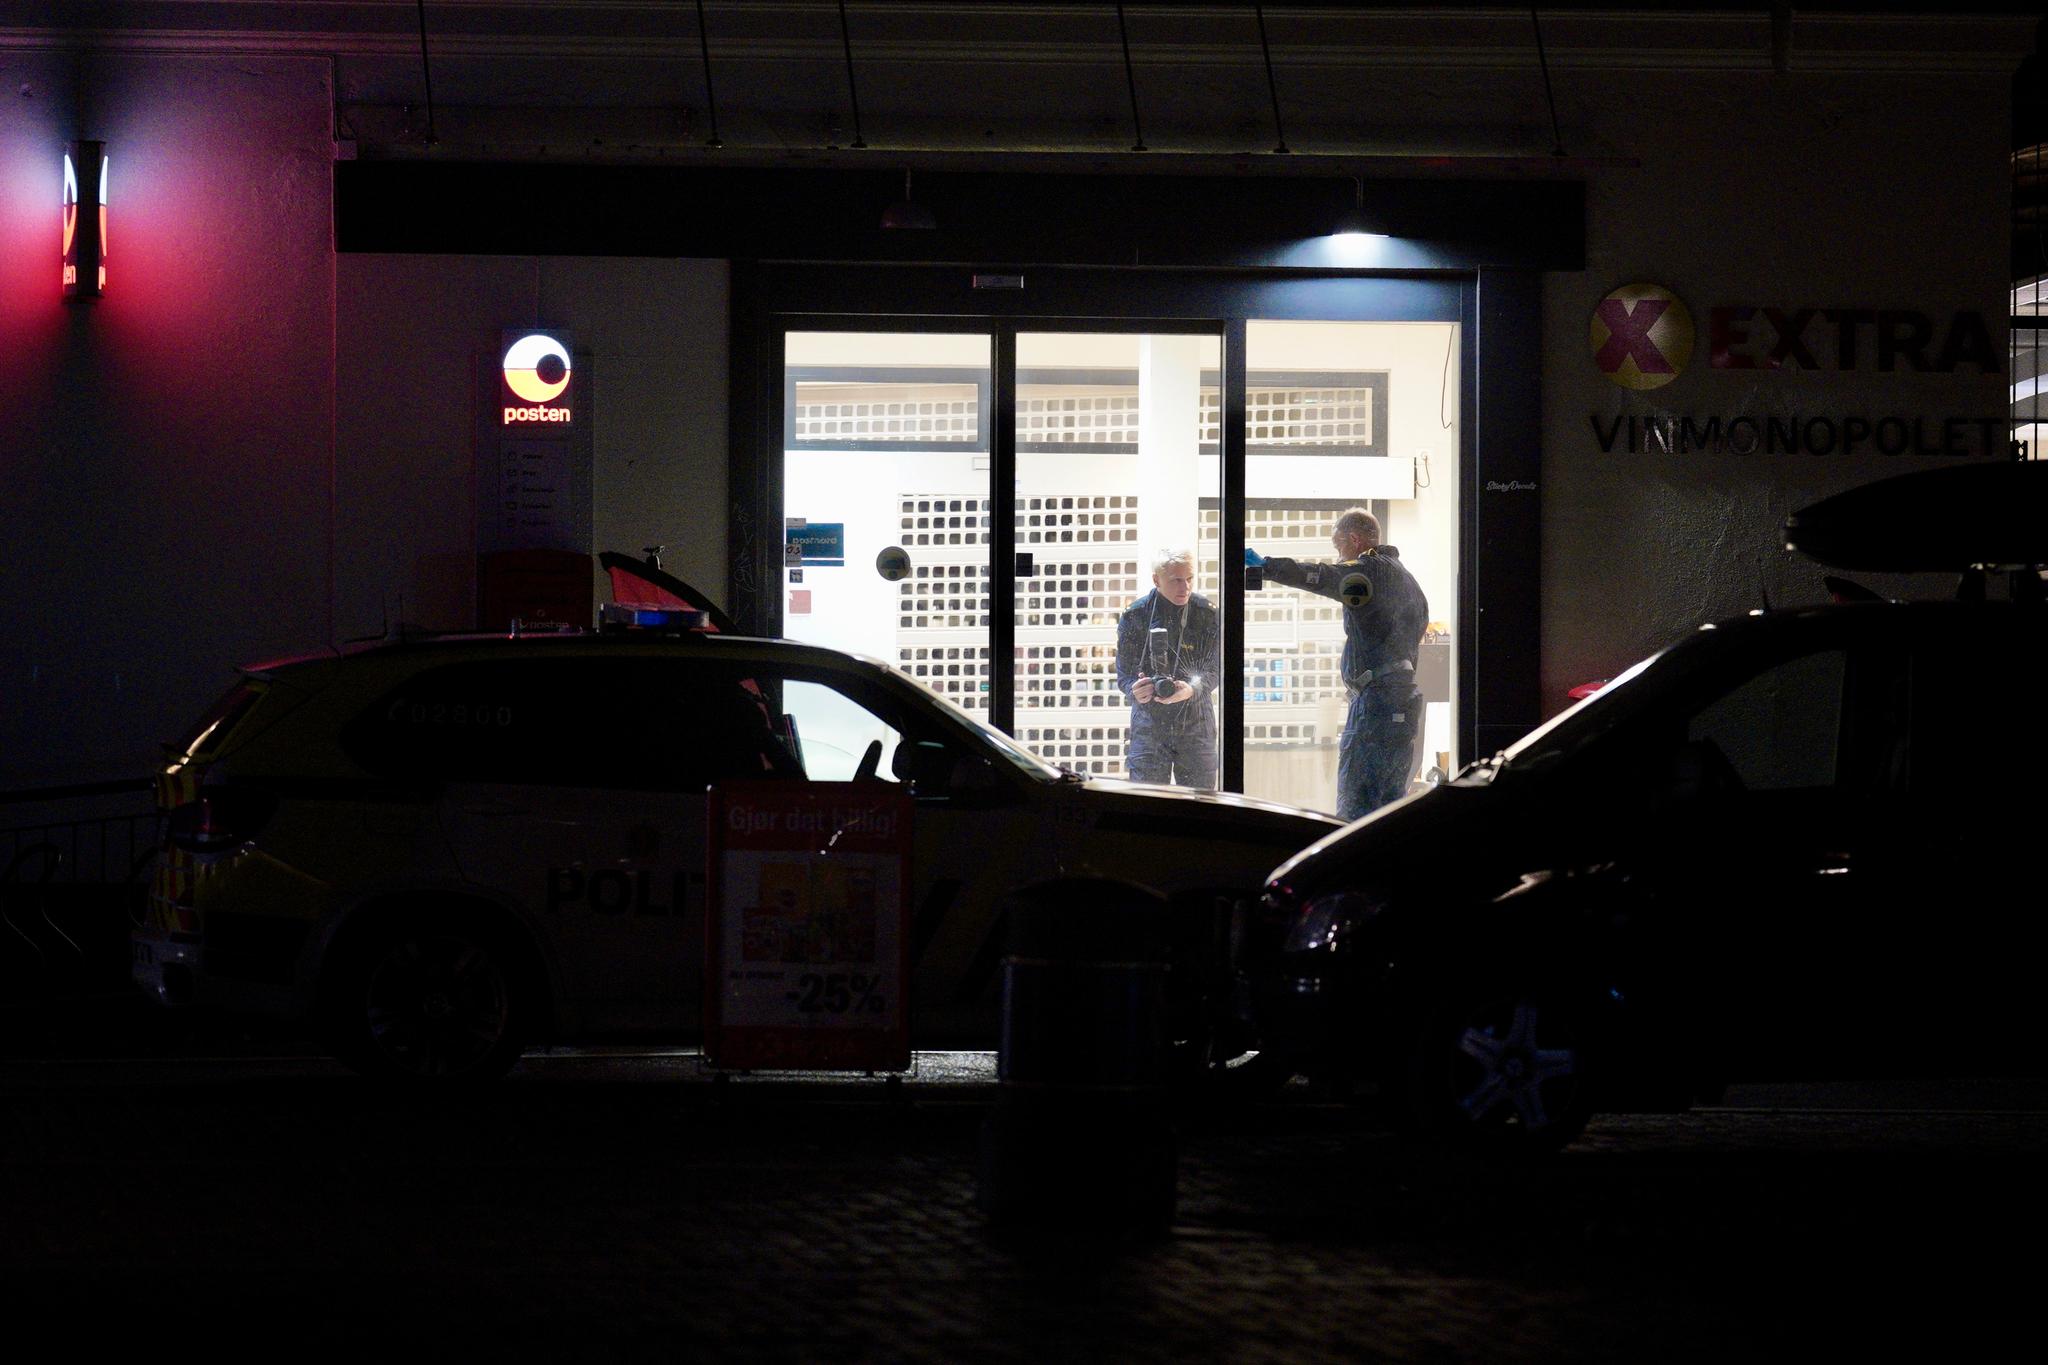 Da den første politipatruljen kom til Extra-butikken i Kongsberg for å forsøke å stoppe Espen Andersen Bråthen, var klokken 18.17.25. Først tre minutter senere tar politiet seg inn i selve butikken og blir beskutt av gjerningsmannen.